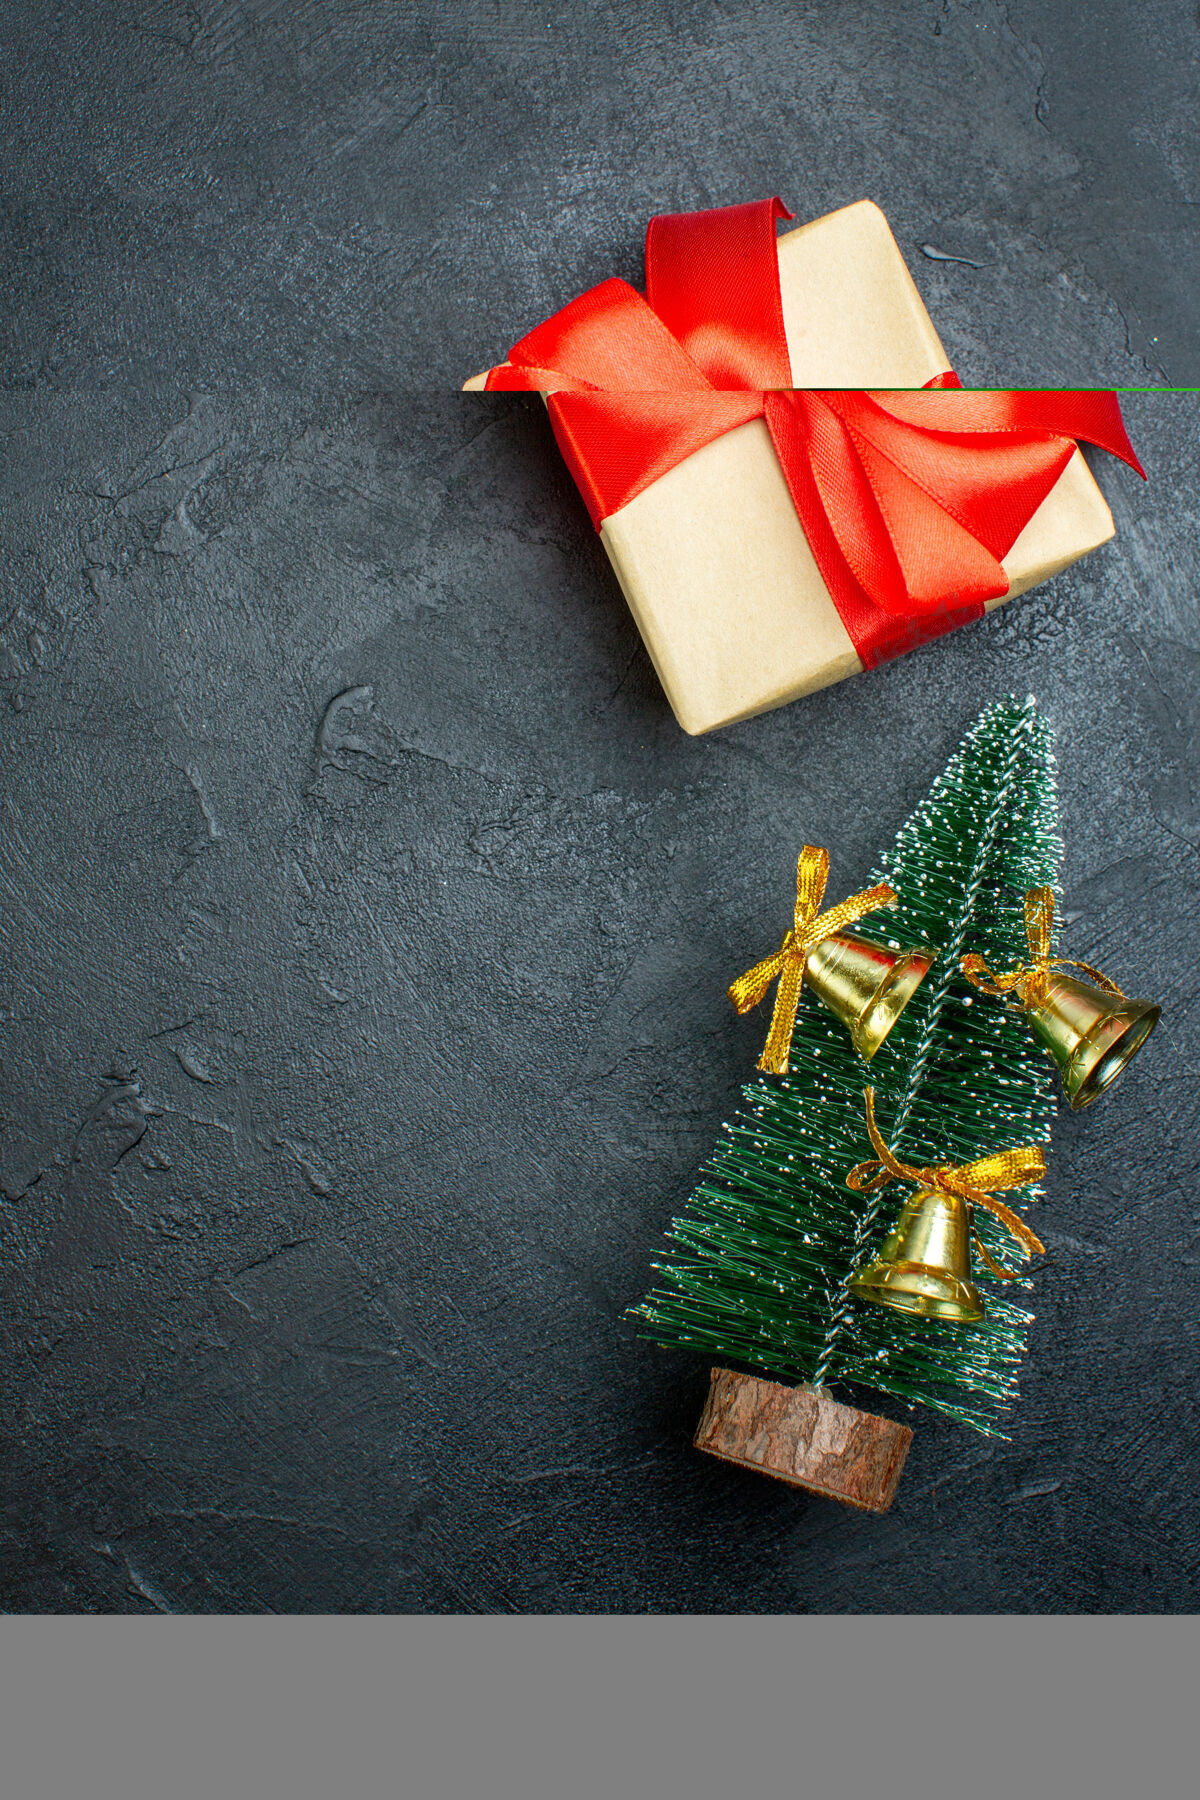 轮子礼品盒的垂直视图 带有蝴蝶结形状的红丝带和装饰的圣诞树o黑色背景视图礼品盒弓形